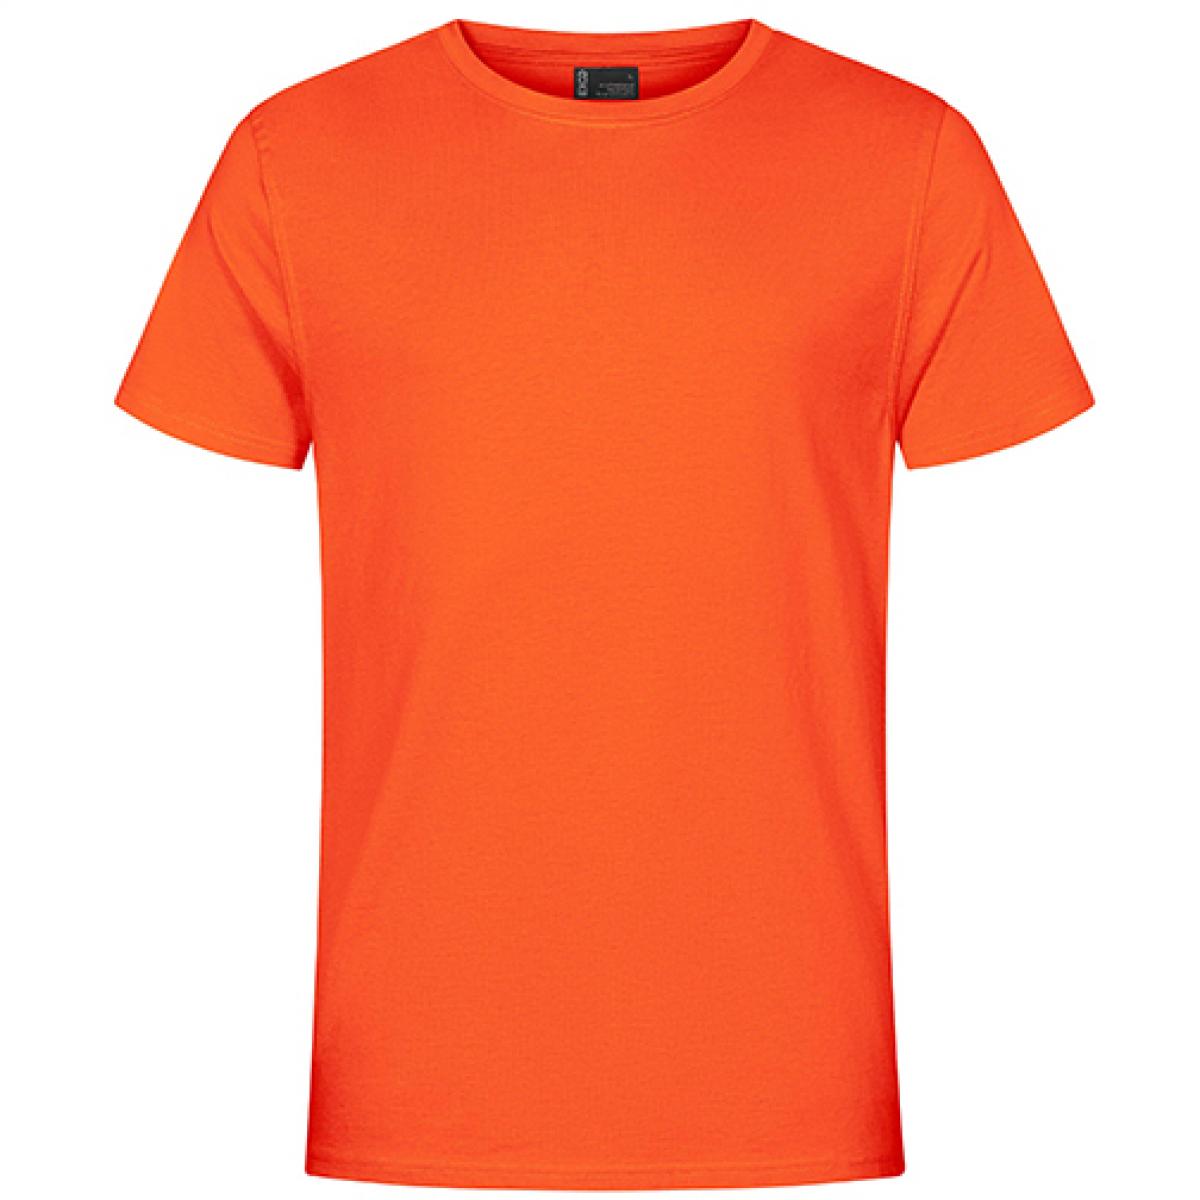 Hersteller: EXCD by Promodoro Herstellernummer: 3077 Artikelbezeichnung: Herren T-Shirt, Single-Jersey Farbe: Flame